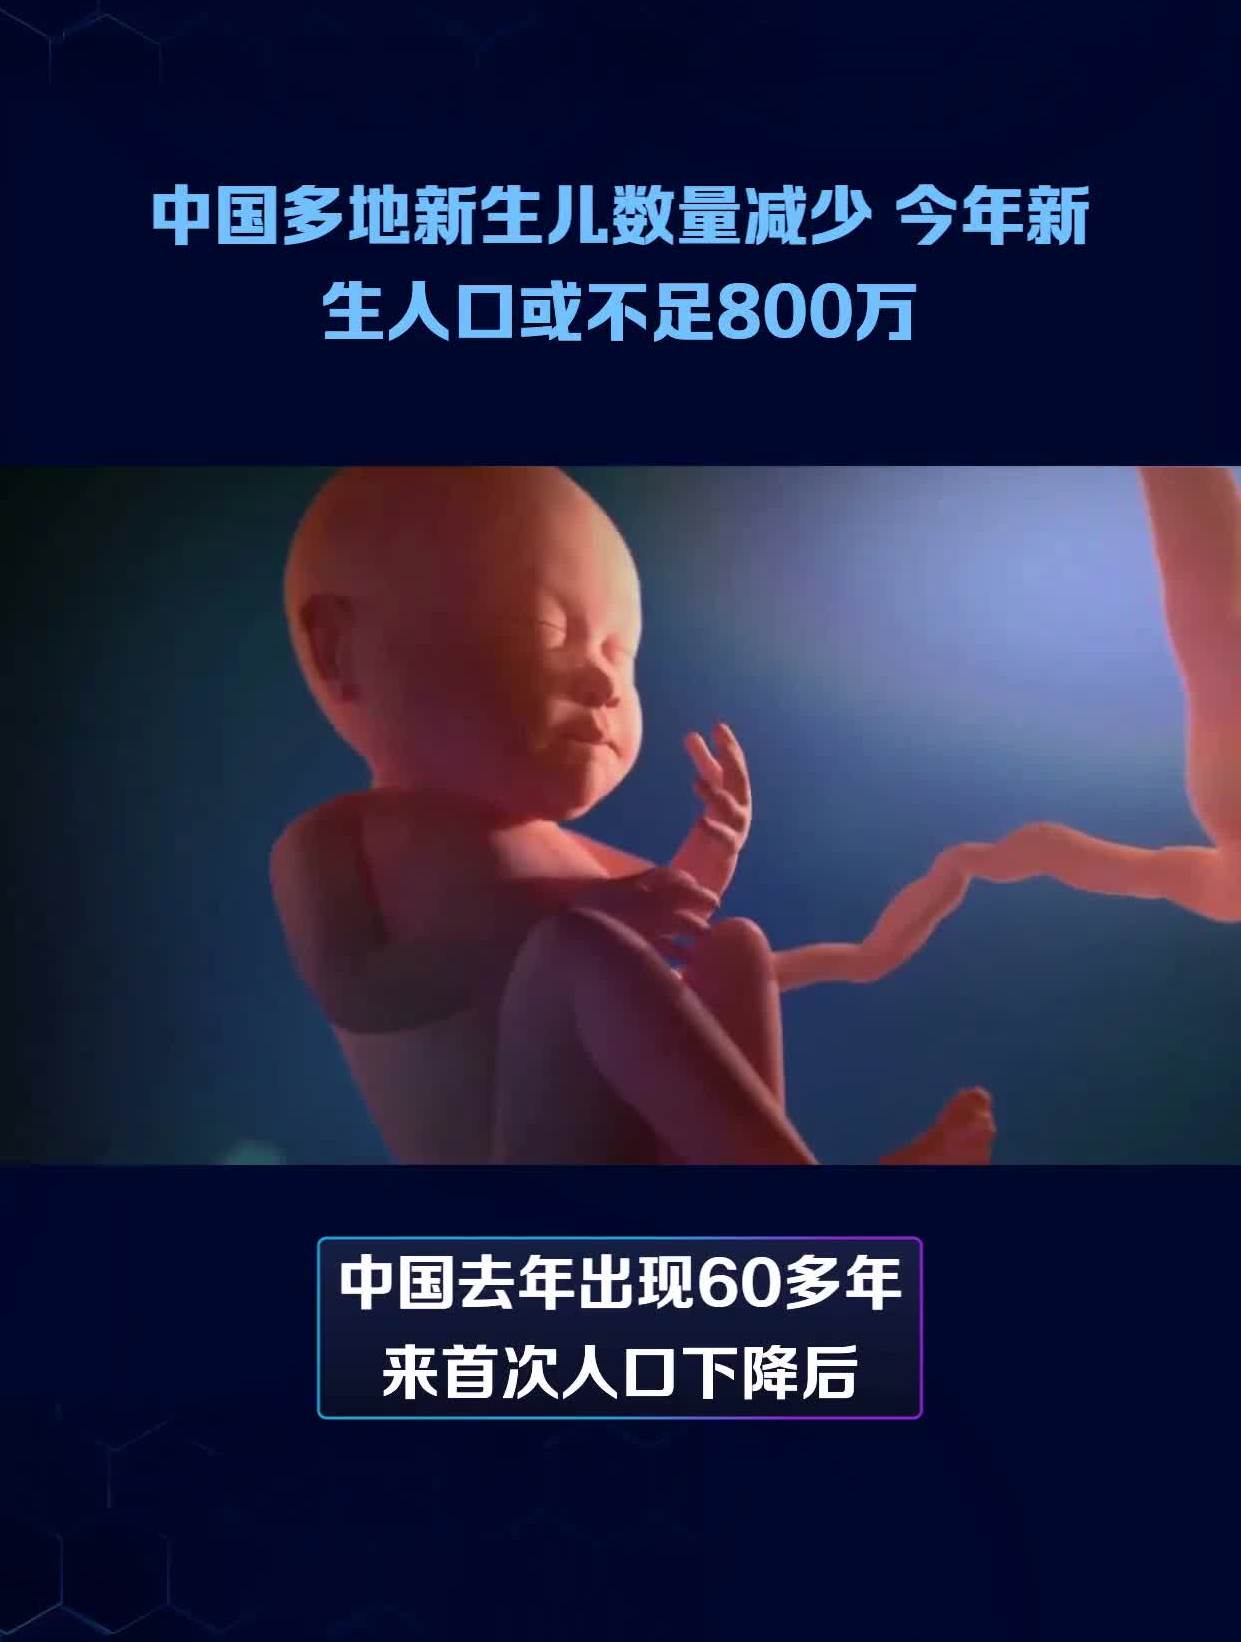 中国多地新生儿数量减少 今年新生人口或不足800万